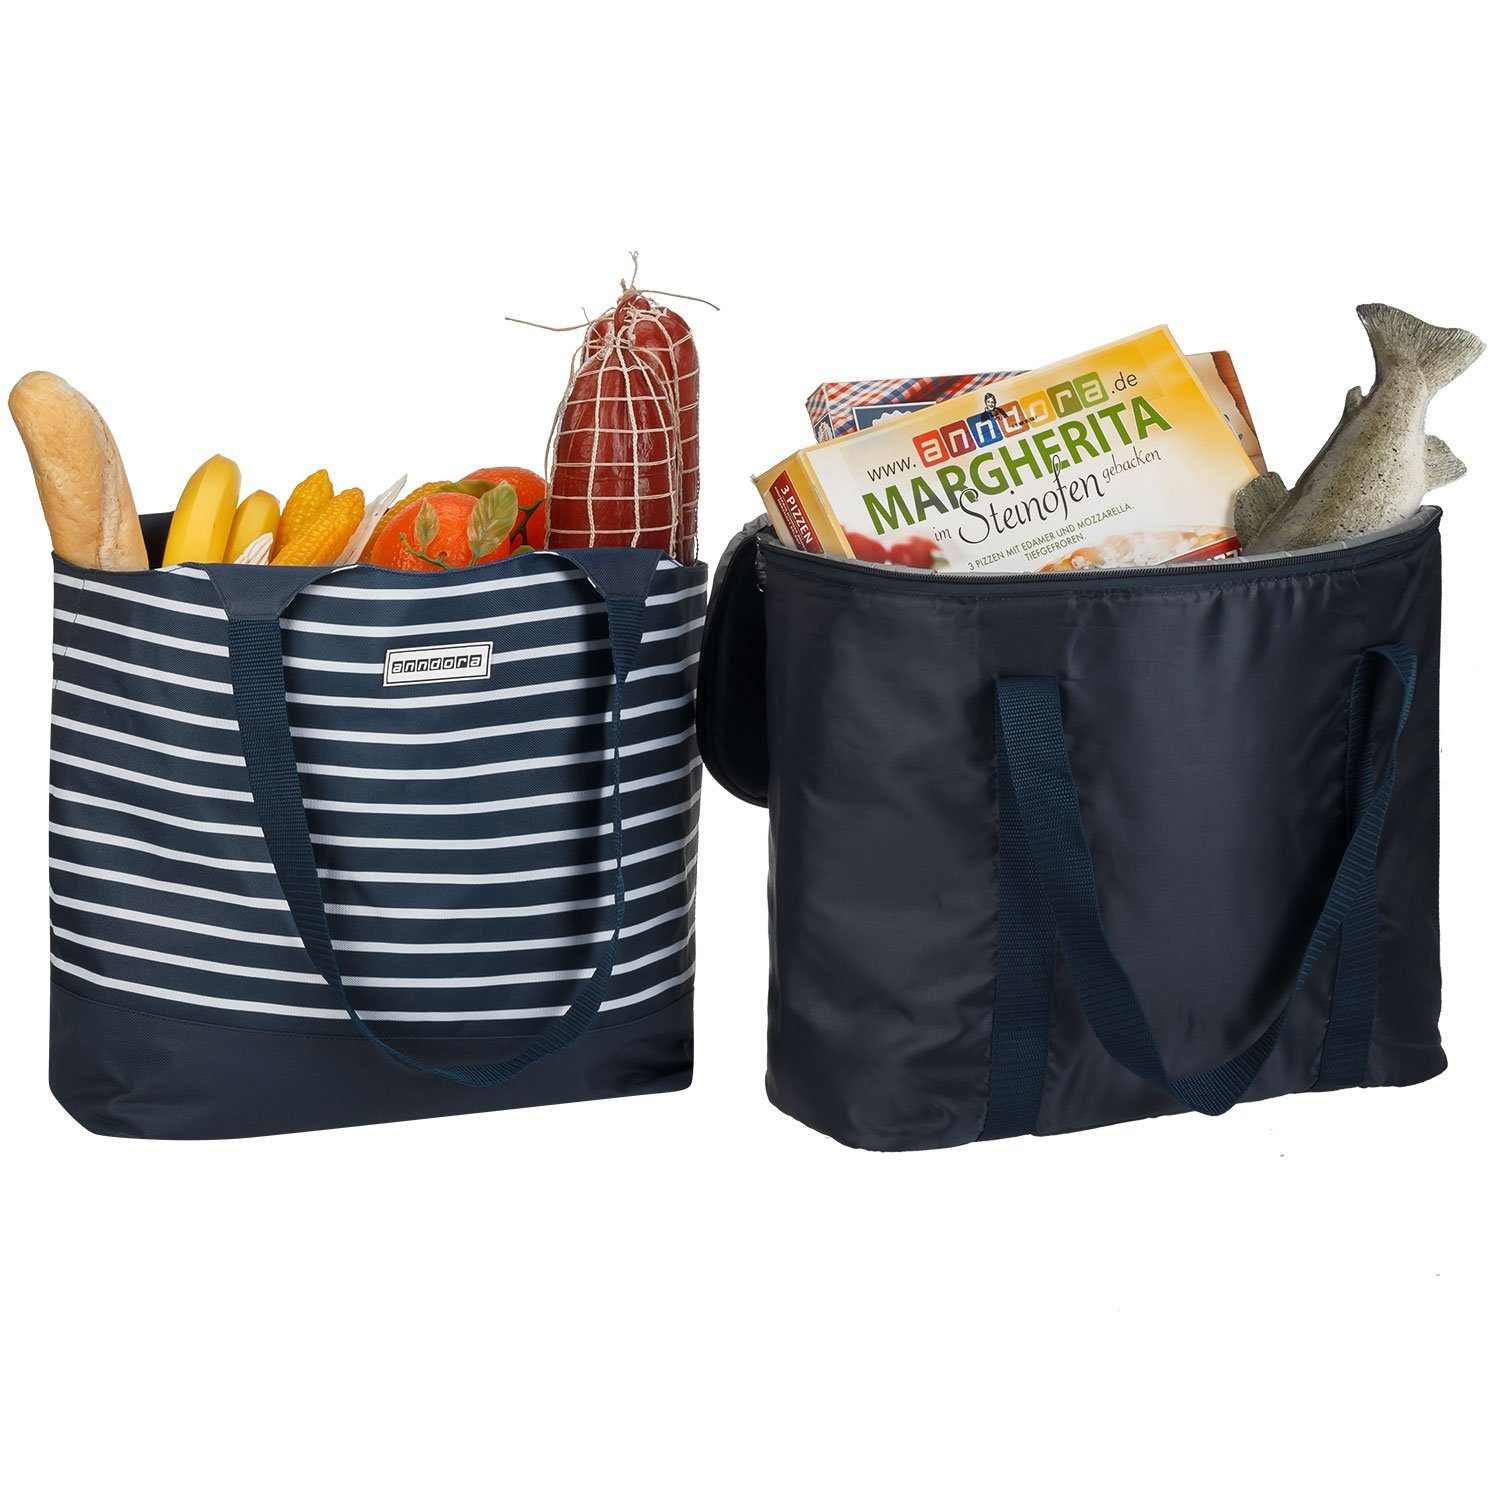 anndora Picknickkorb 2 Kühltasche zur Einkaufstasche Auswahl + 1 - + Blau Kühlakku Design in